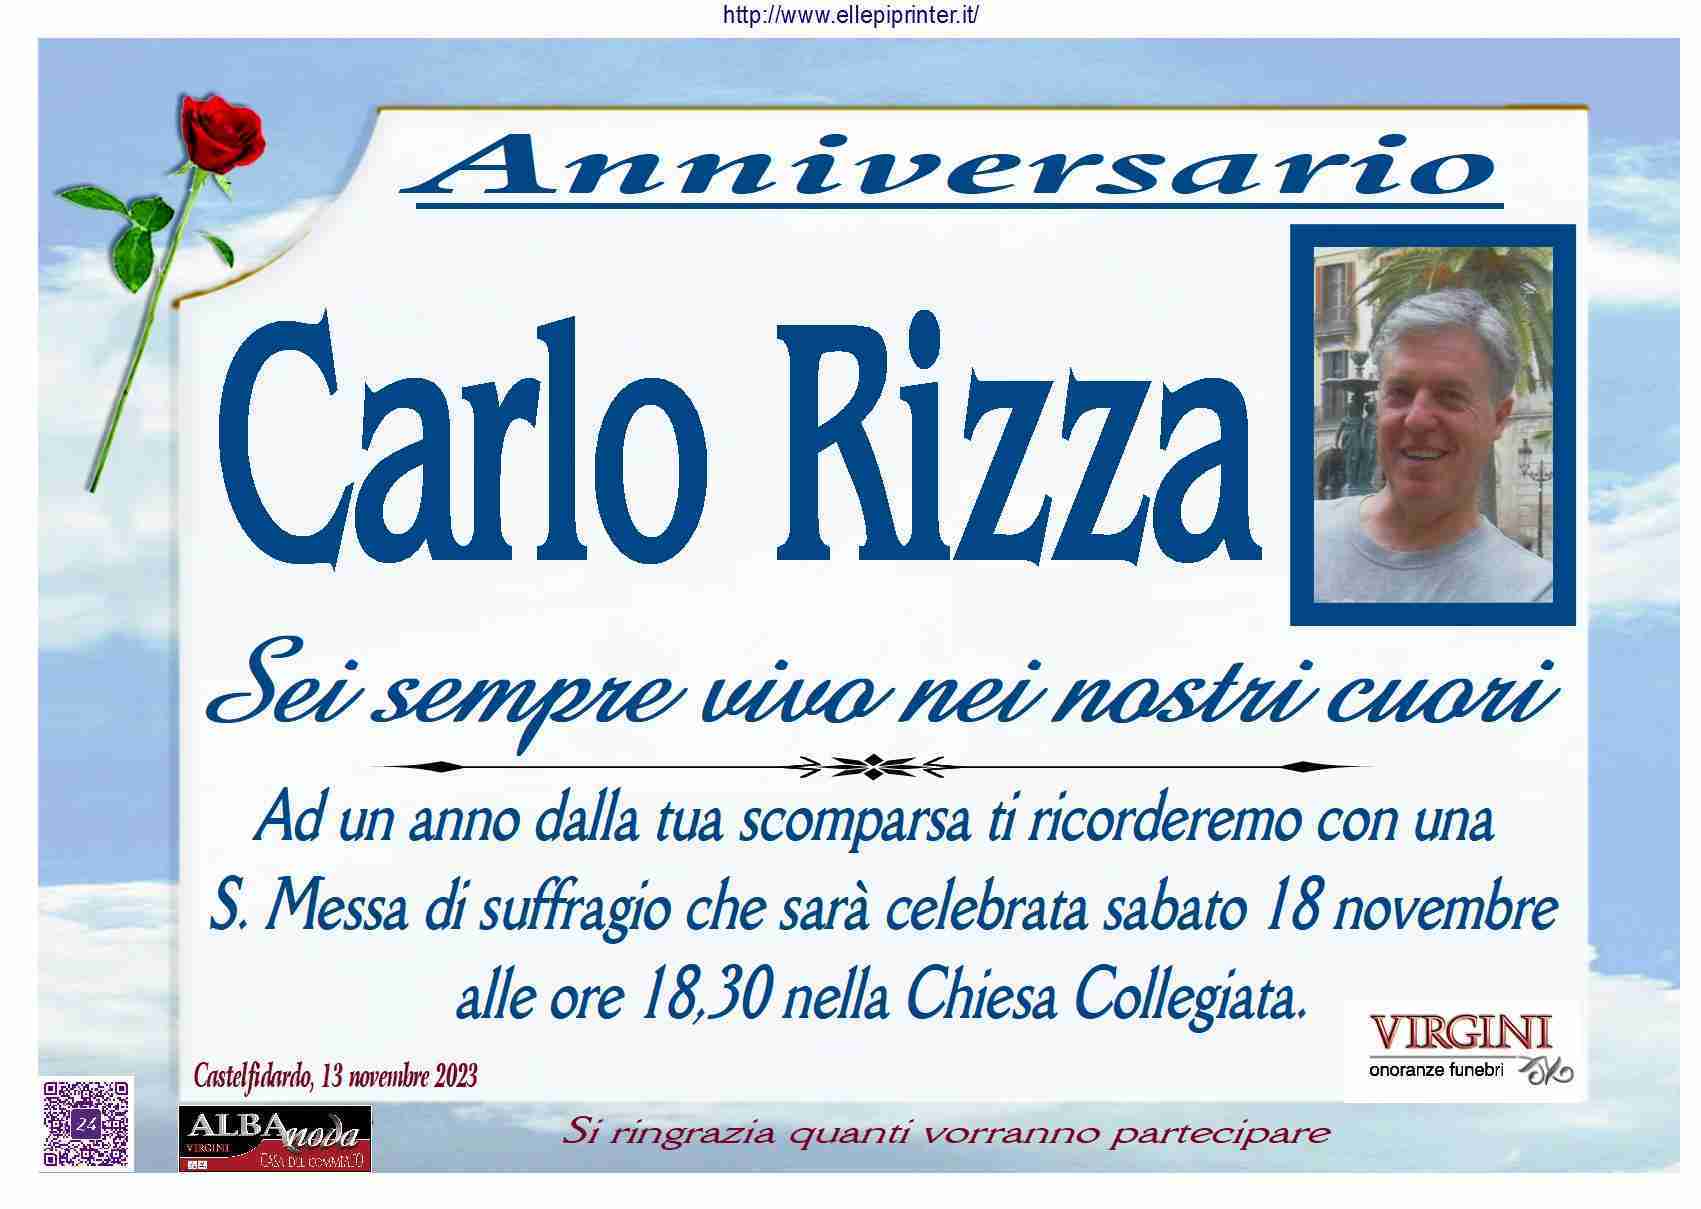 Carlo Rizza